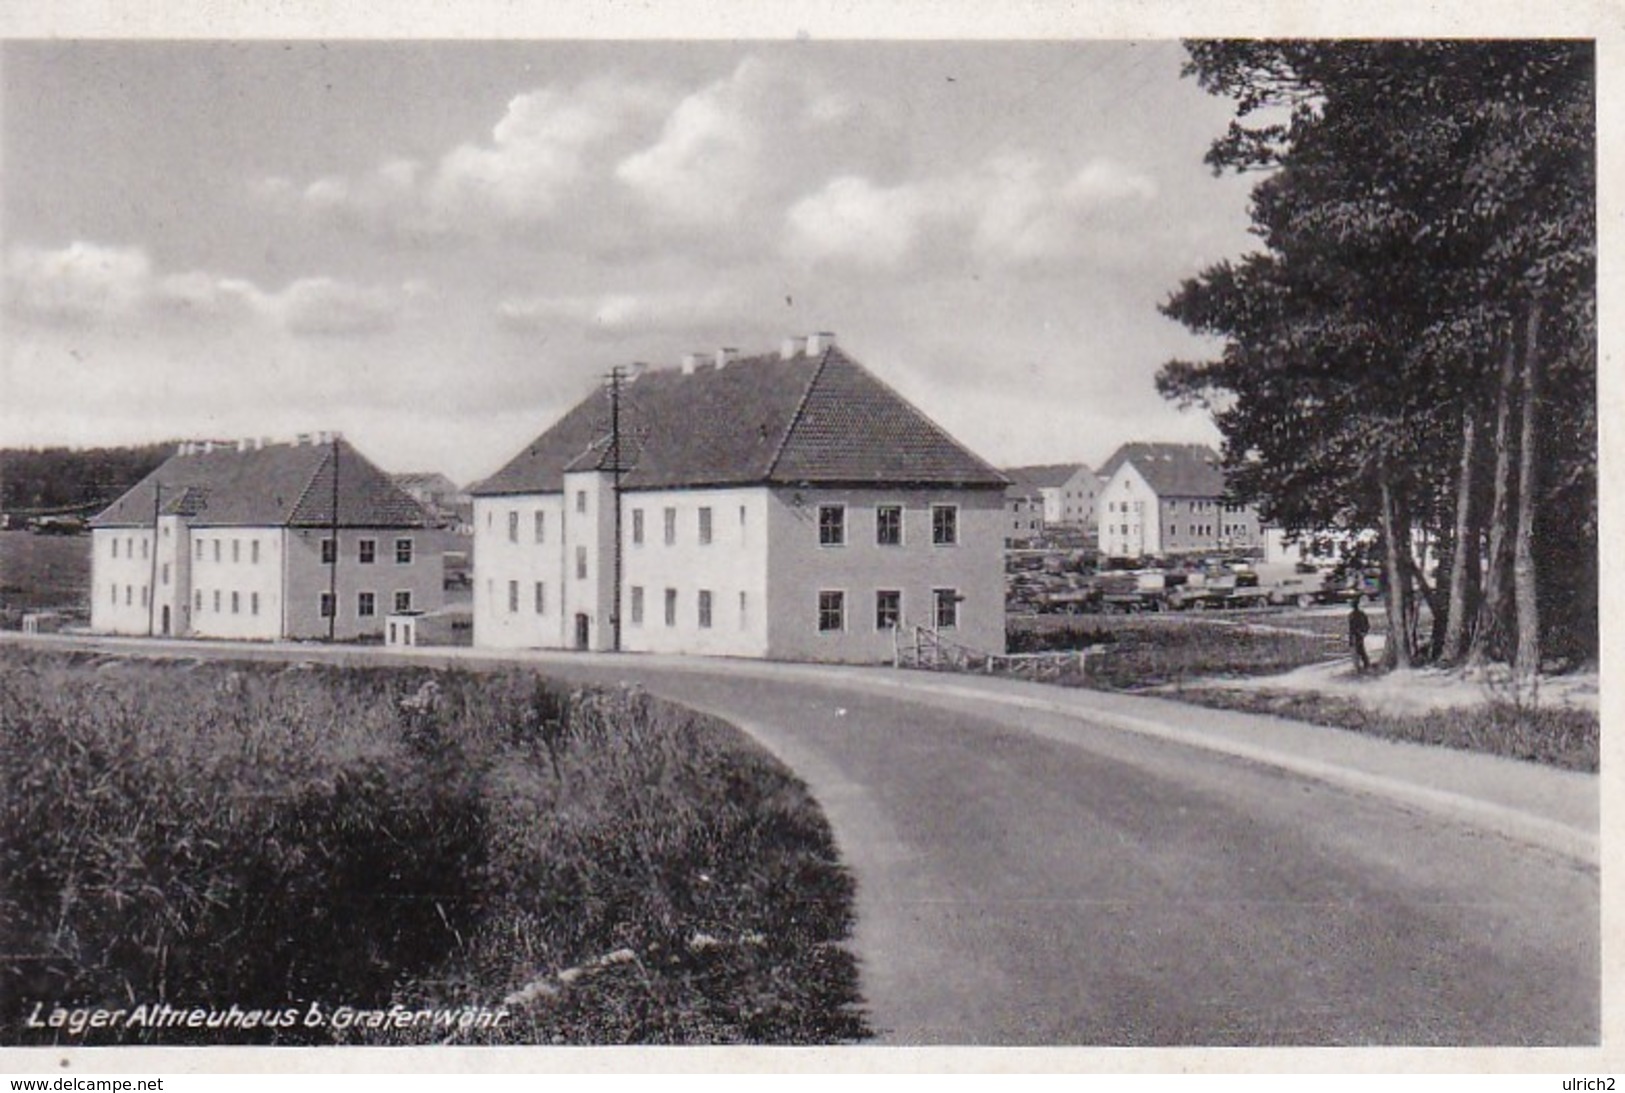 AK Lager Altneuhaus B. Grafenwöhr - 1942 (41114) - Grafenwoehr